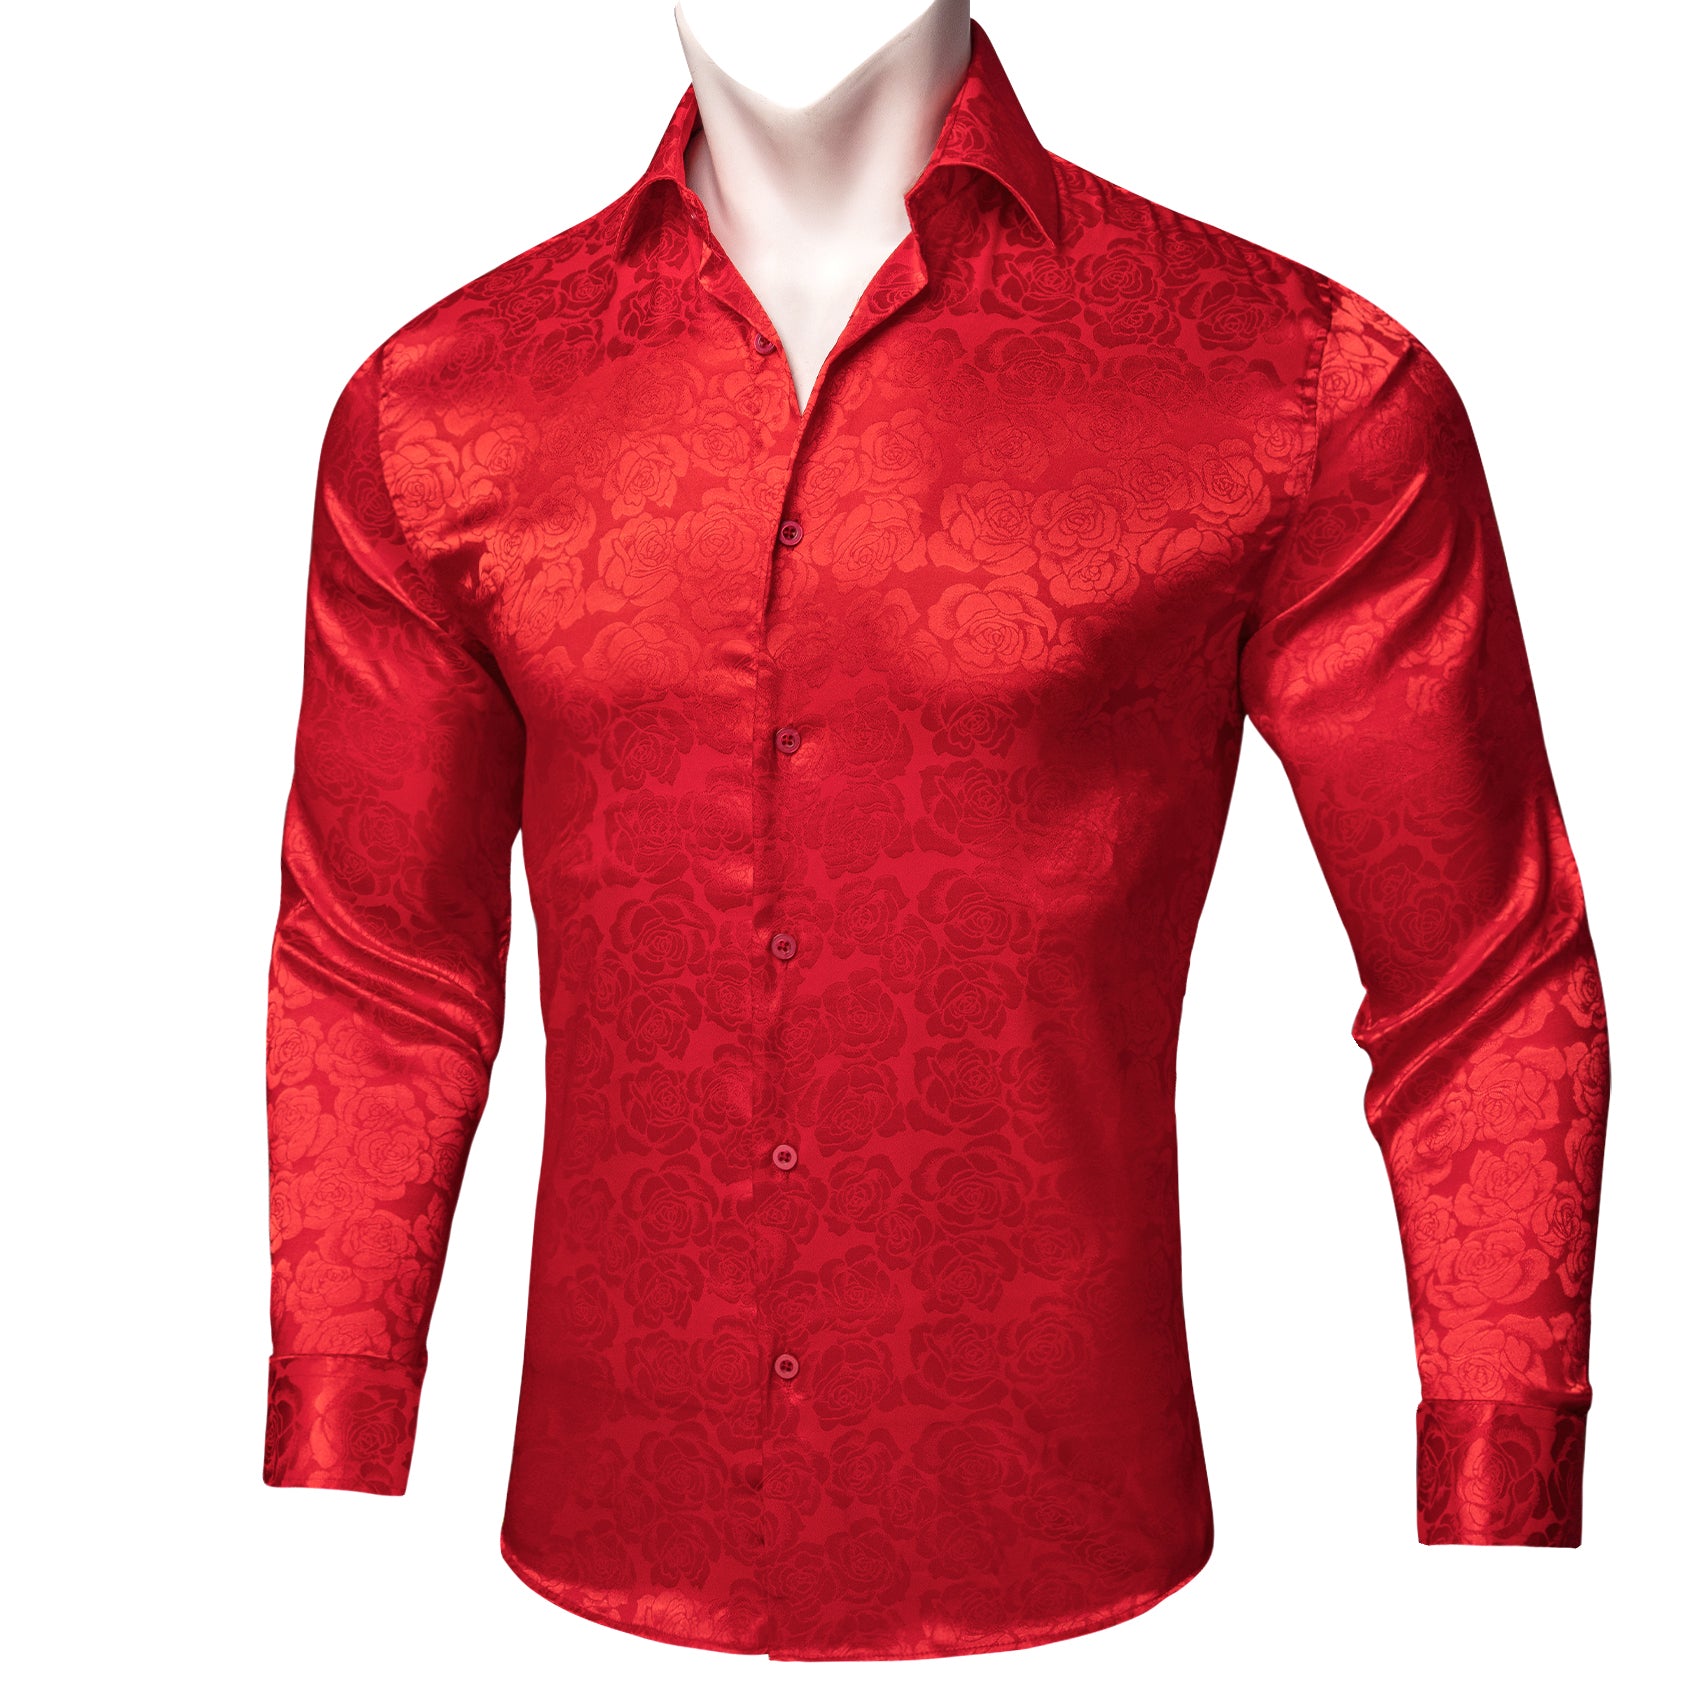 Barry.wang Red Floral Flower Silk Men's Shirt